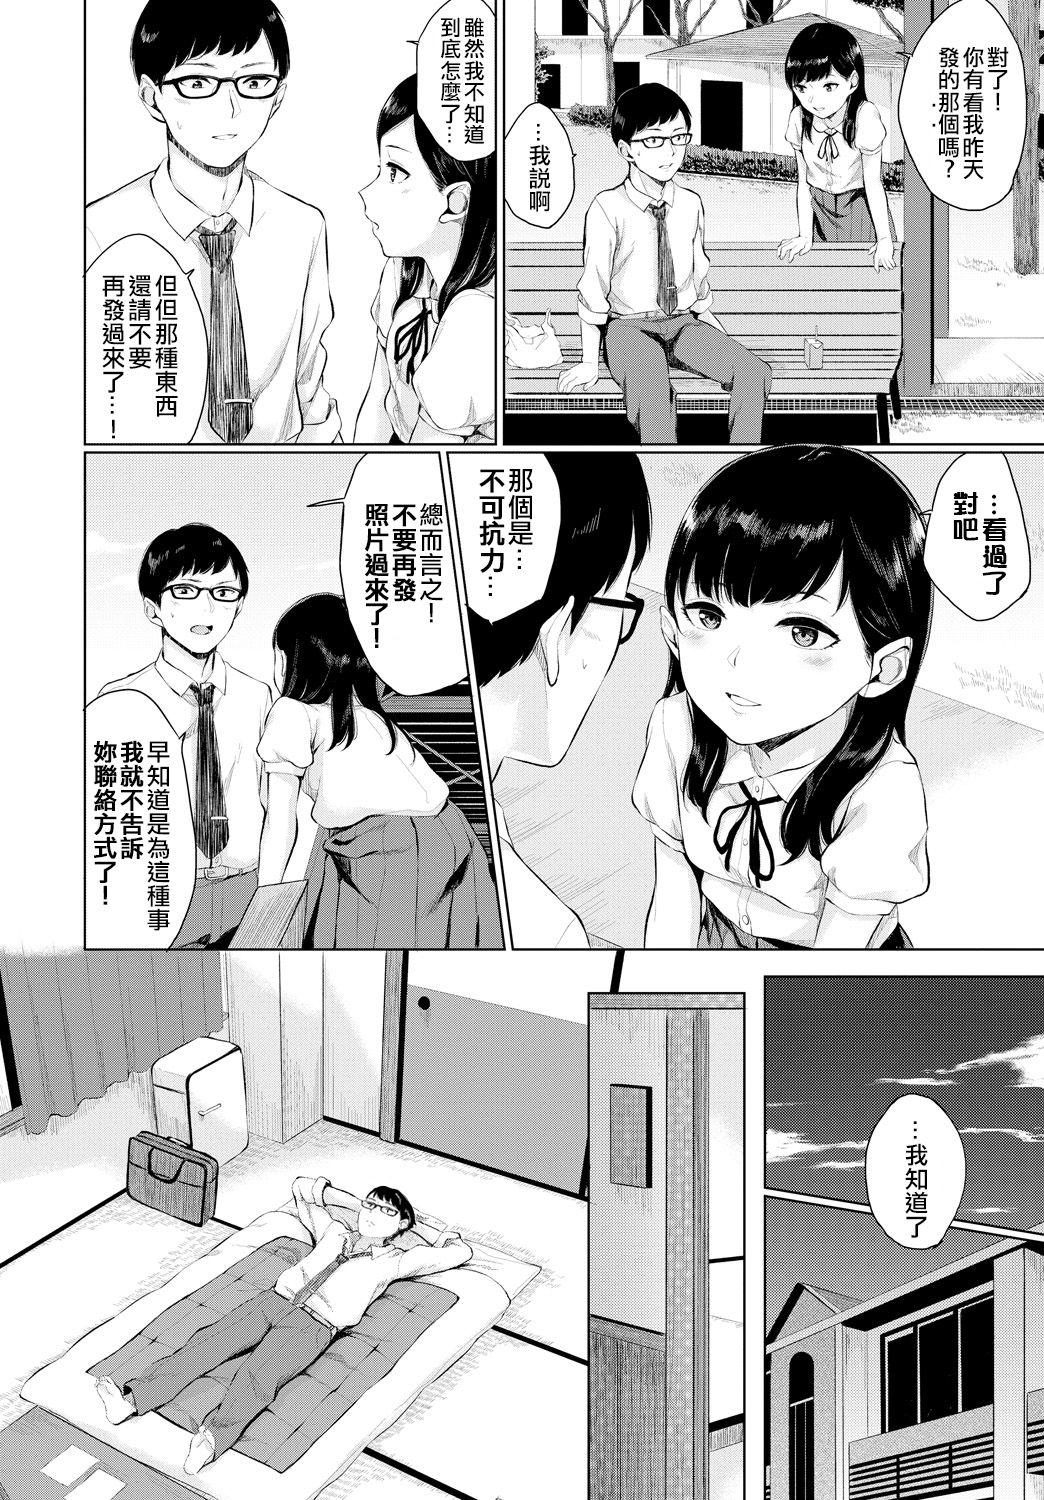 Hardcore Watashi no Sensei Teentube - Page 4